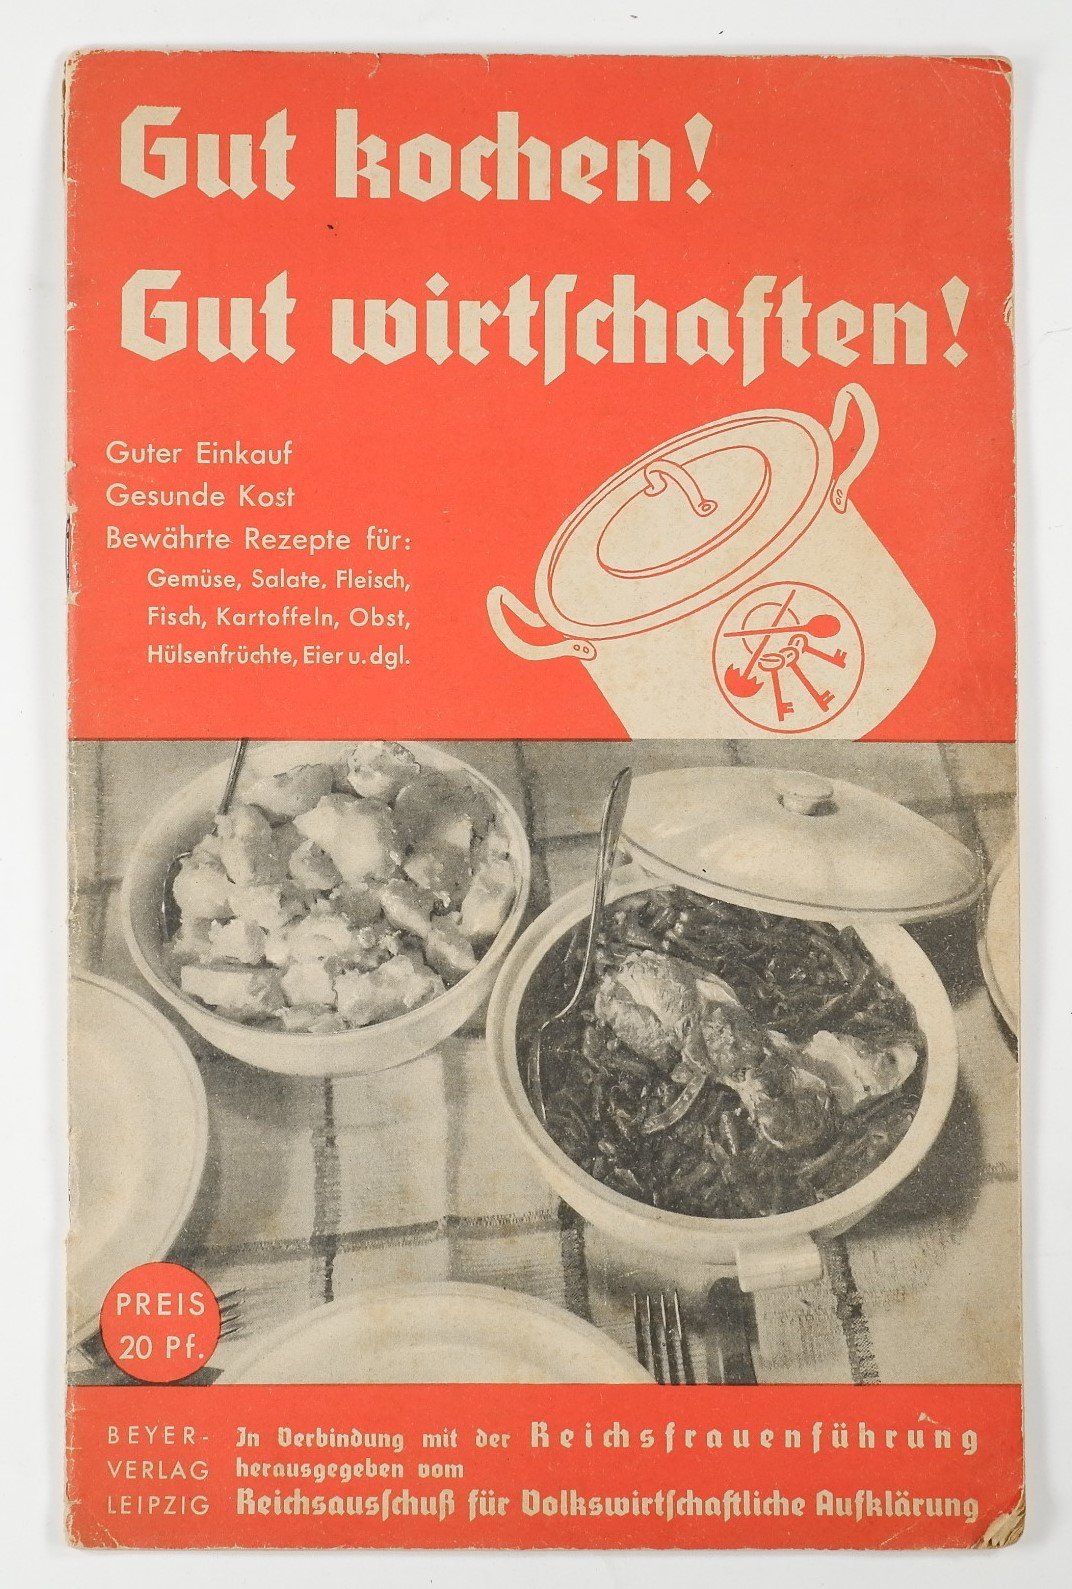 Gut kochen! Gut witschaften! (Volkskunde- und Freilichtmuseum Roscheider Hof RR-F)